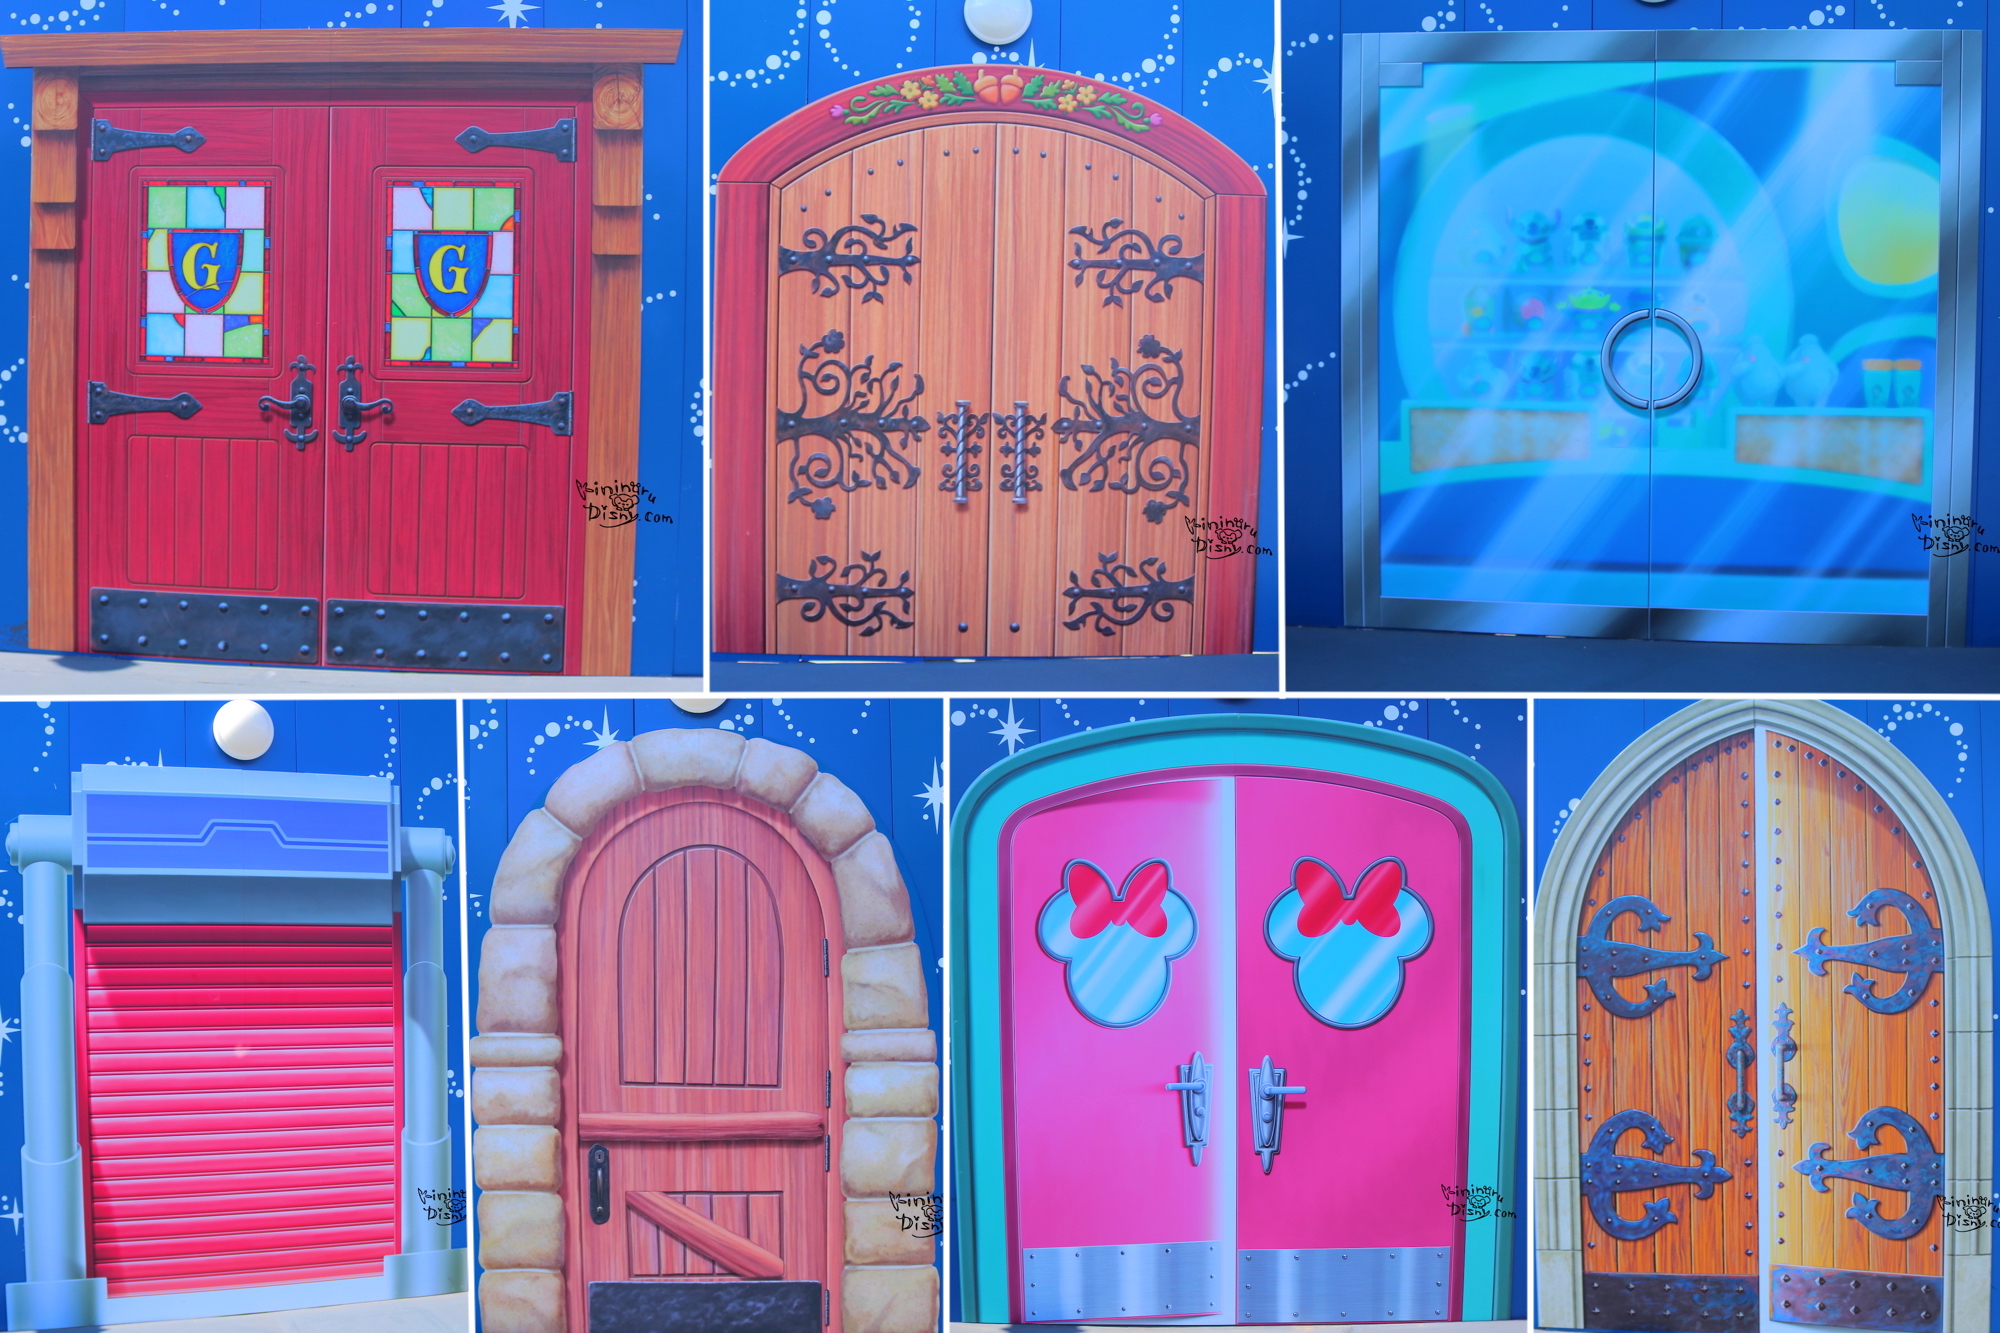 ディズニー ワクワクするよな扉が出現 新エリアの施設をイメージした扉が工事の壁に 気になるディズニーブログ